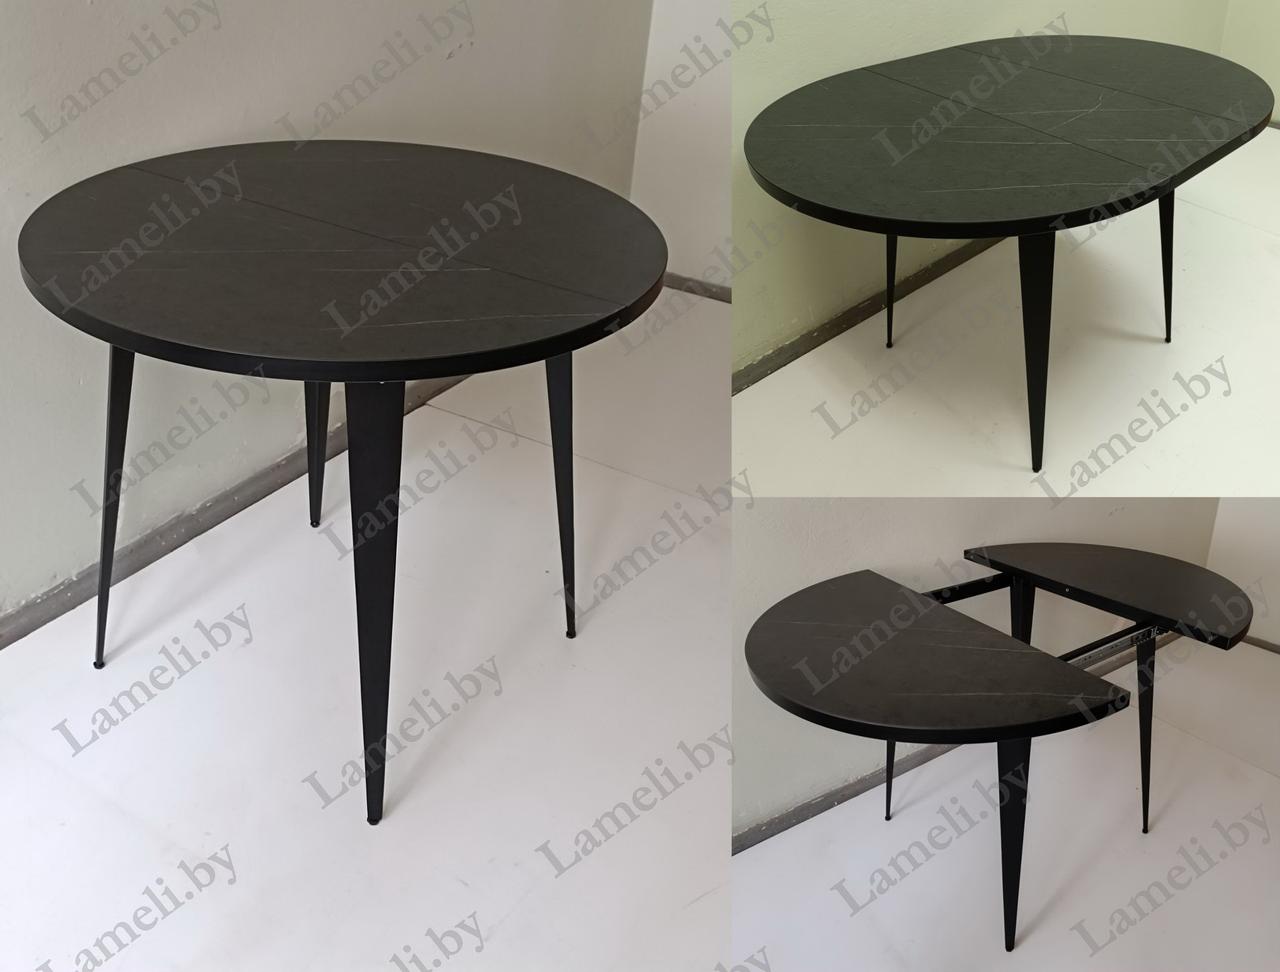 РАЗДВИЖНОЙ КРУГЛЫЙ стол из массива дуба, ЛДСП или постформинга  на металлокаркасе серии К-3. ЛЮБОЙ размер,цвет